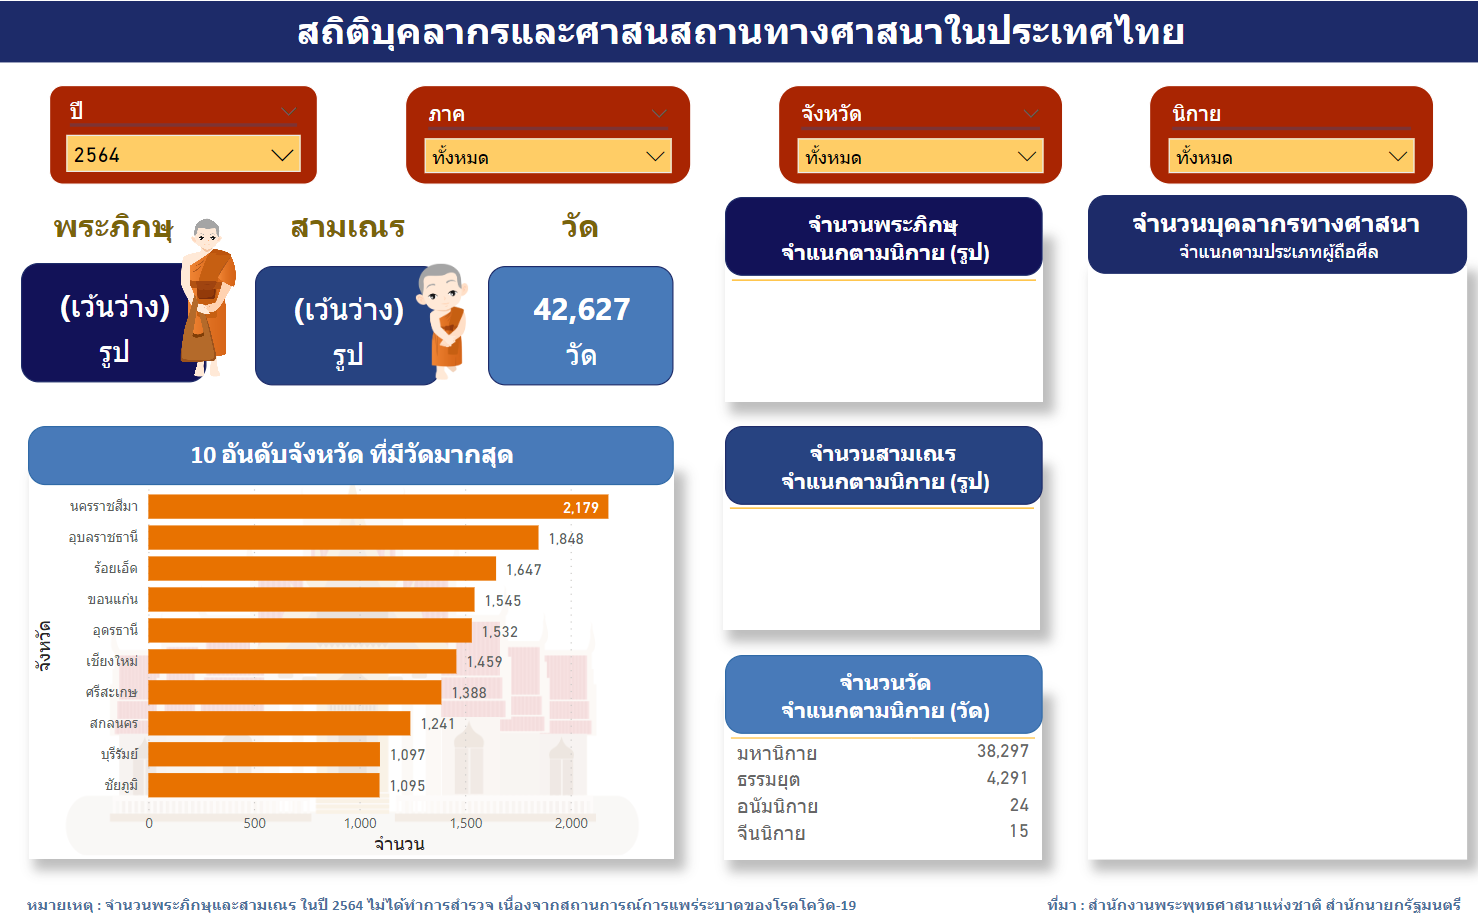 สถิติบุคลากรและศาสนสถานทางศาสนาในประเทศไทย